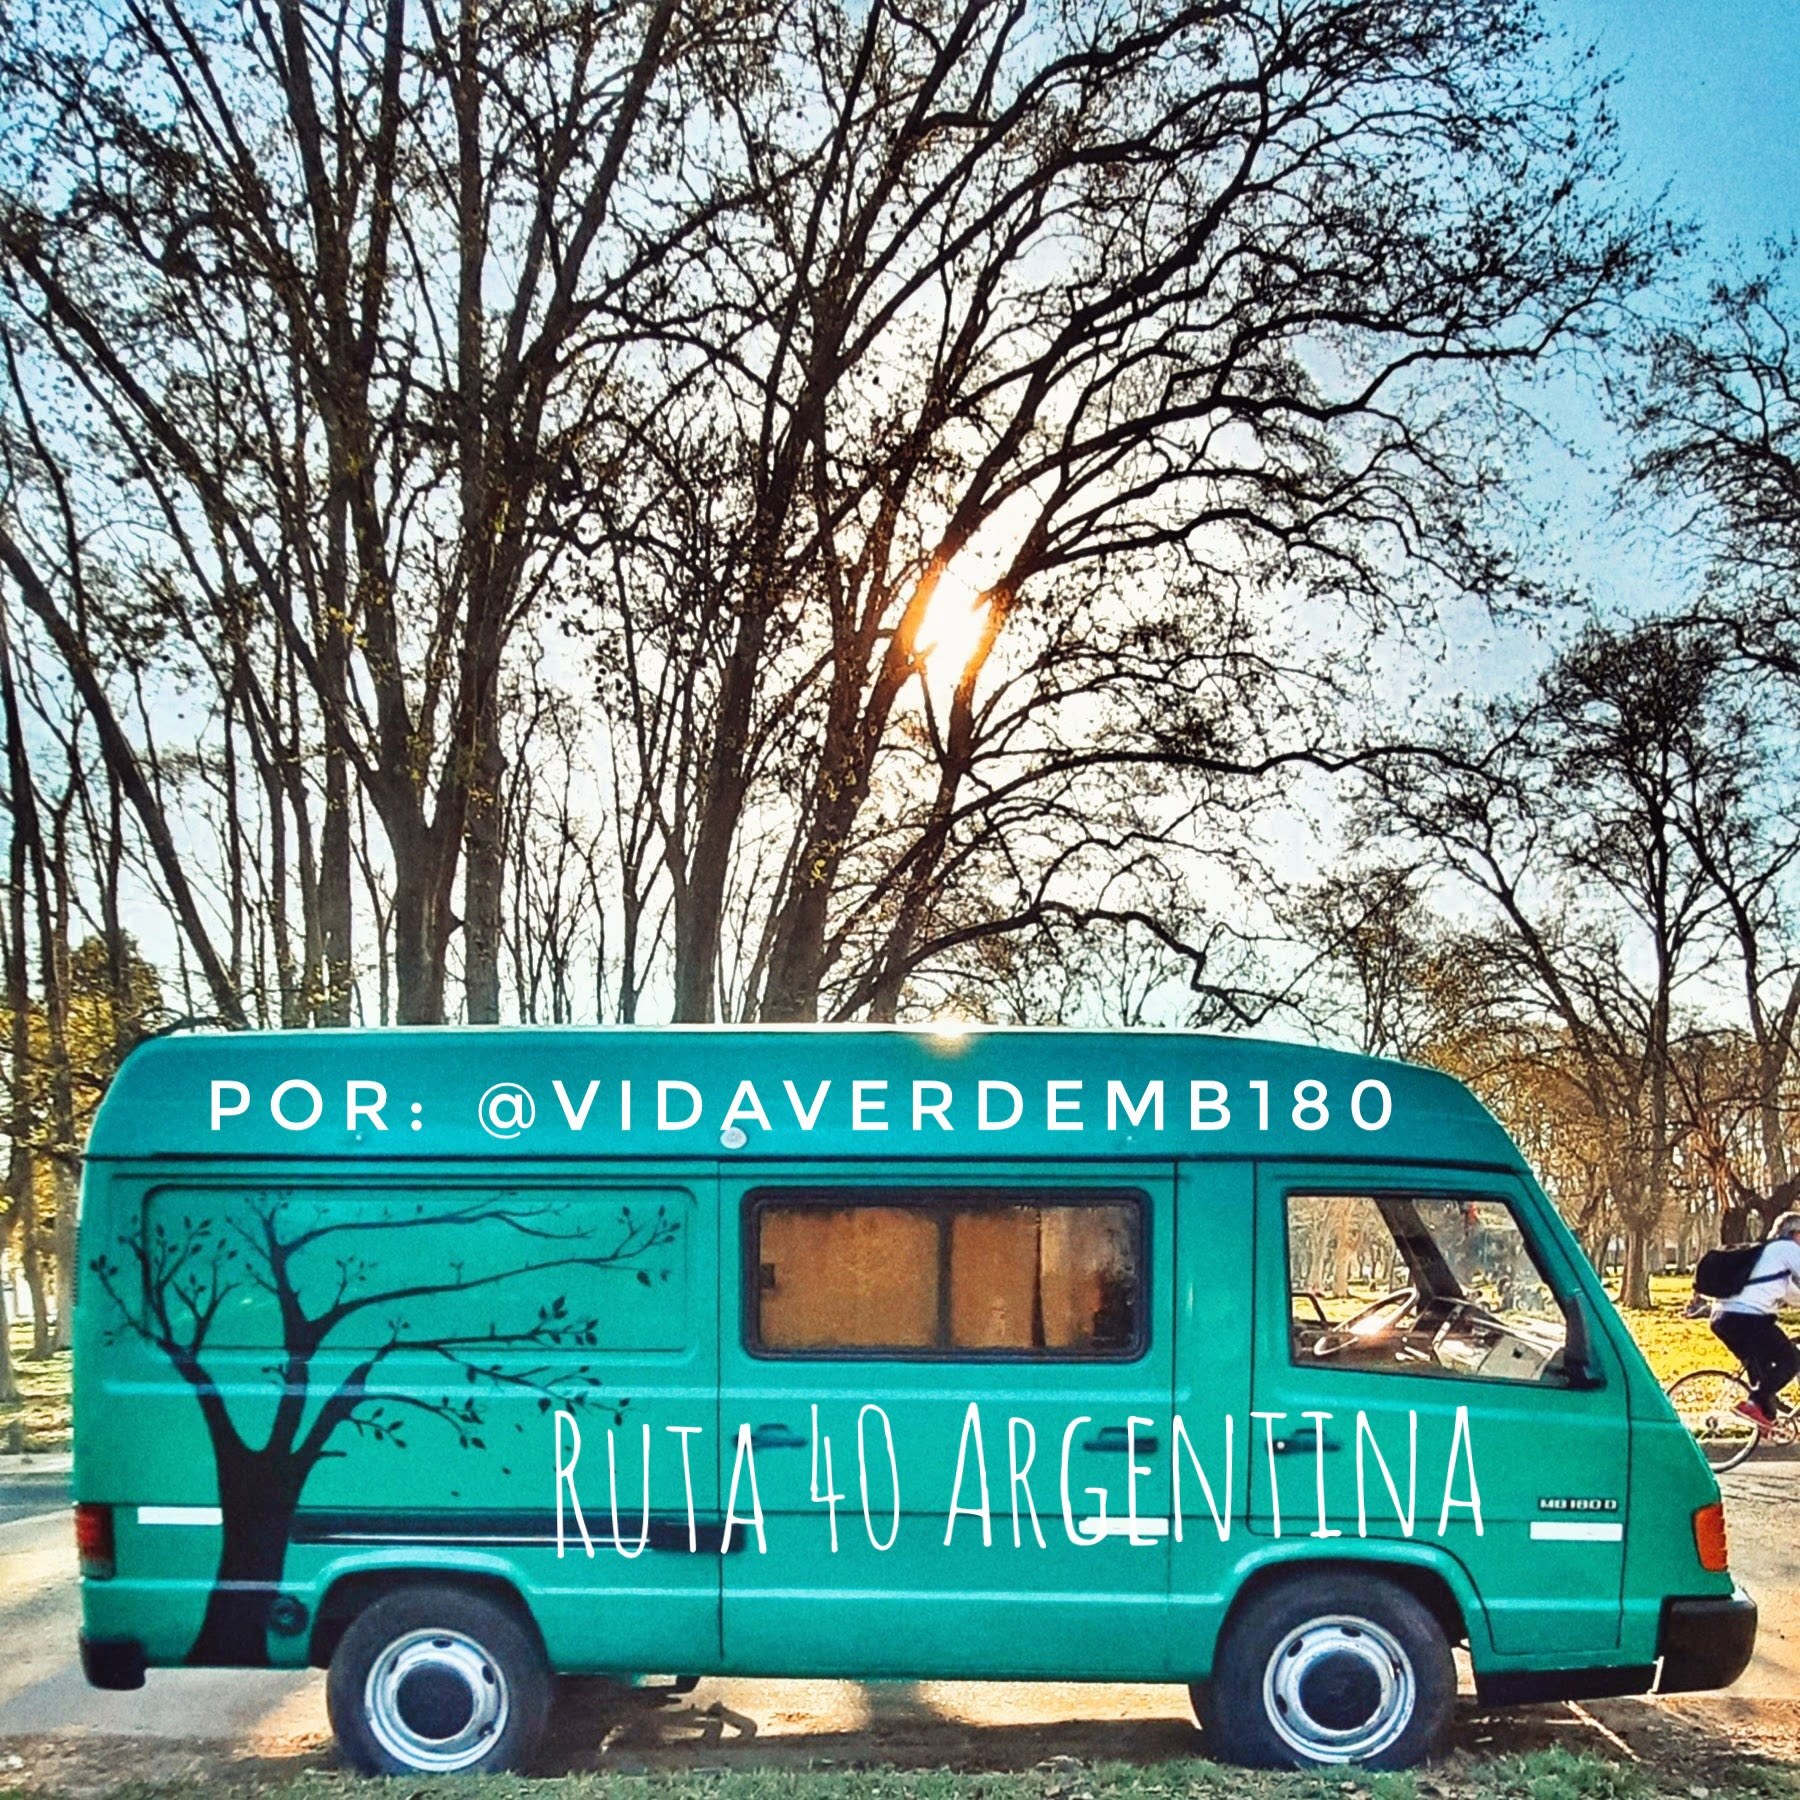 Argentina in camper route 40